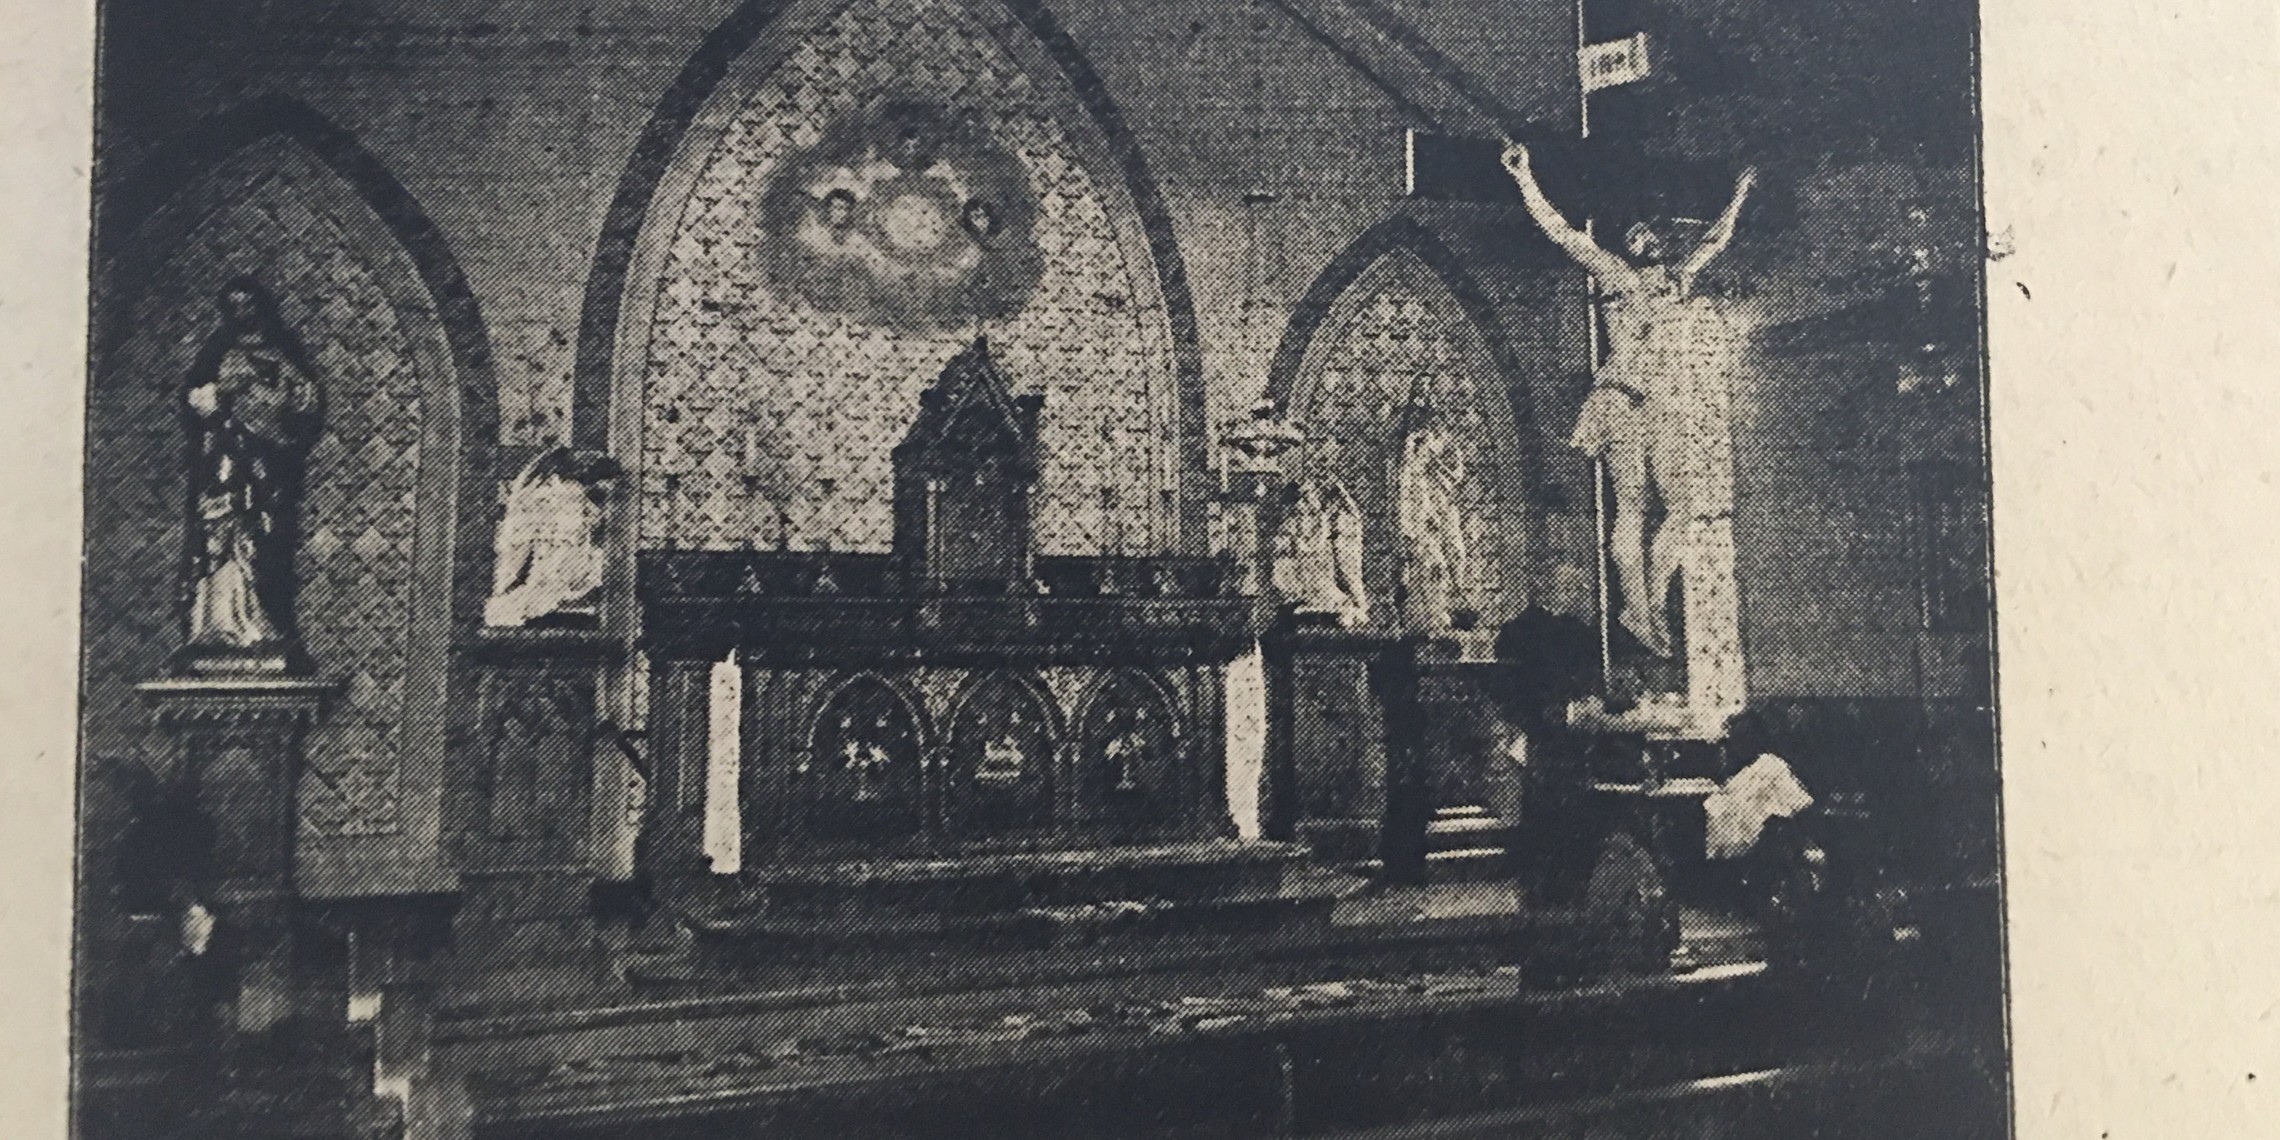 St. Ann Sanctuary 1800s